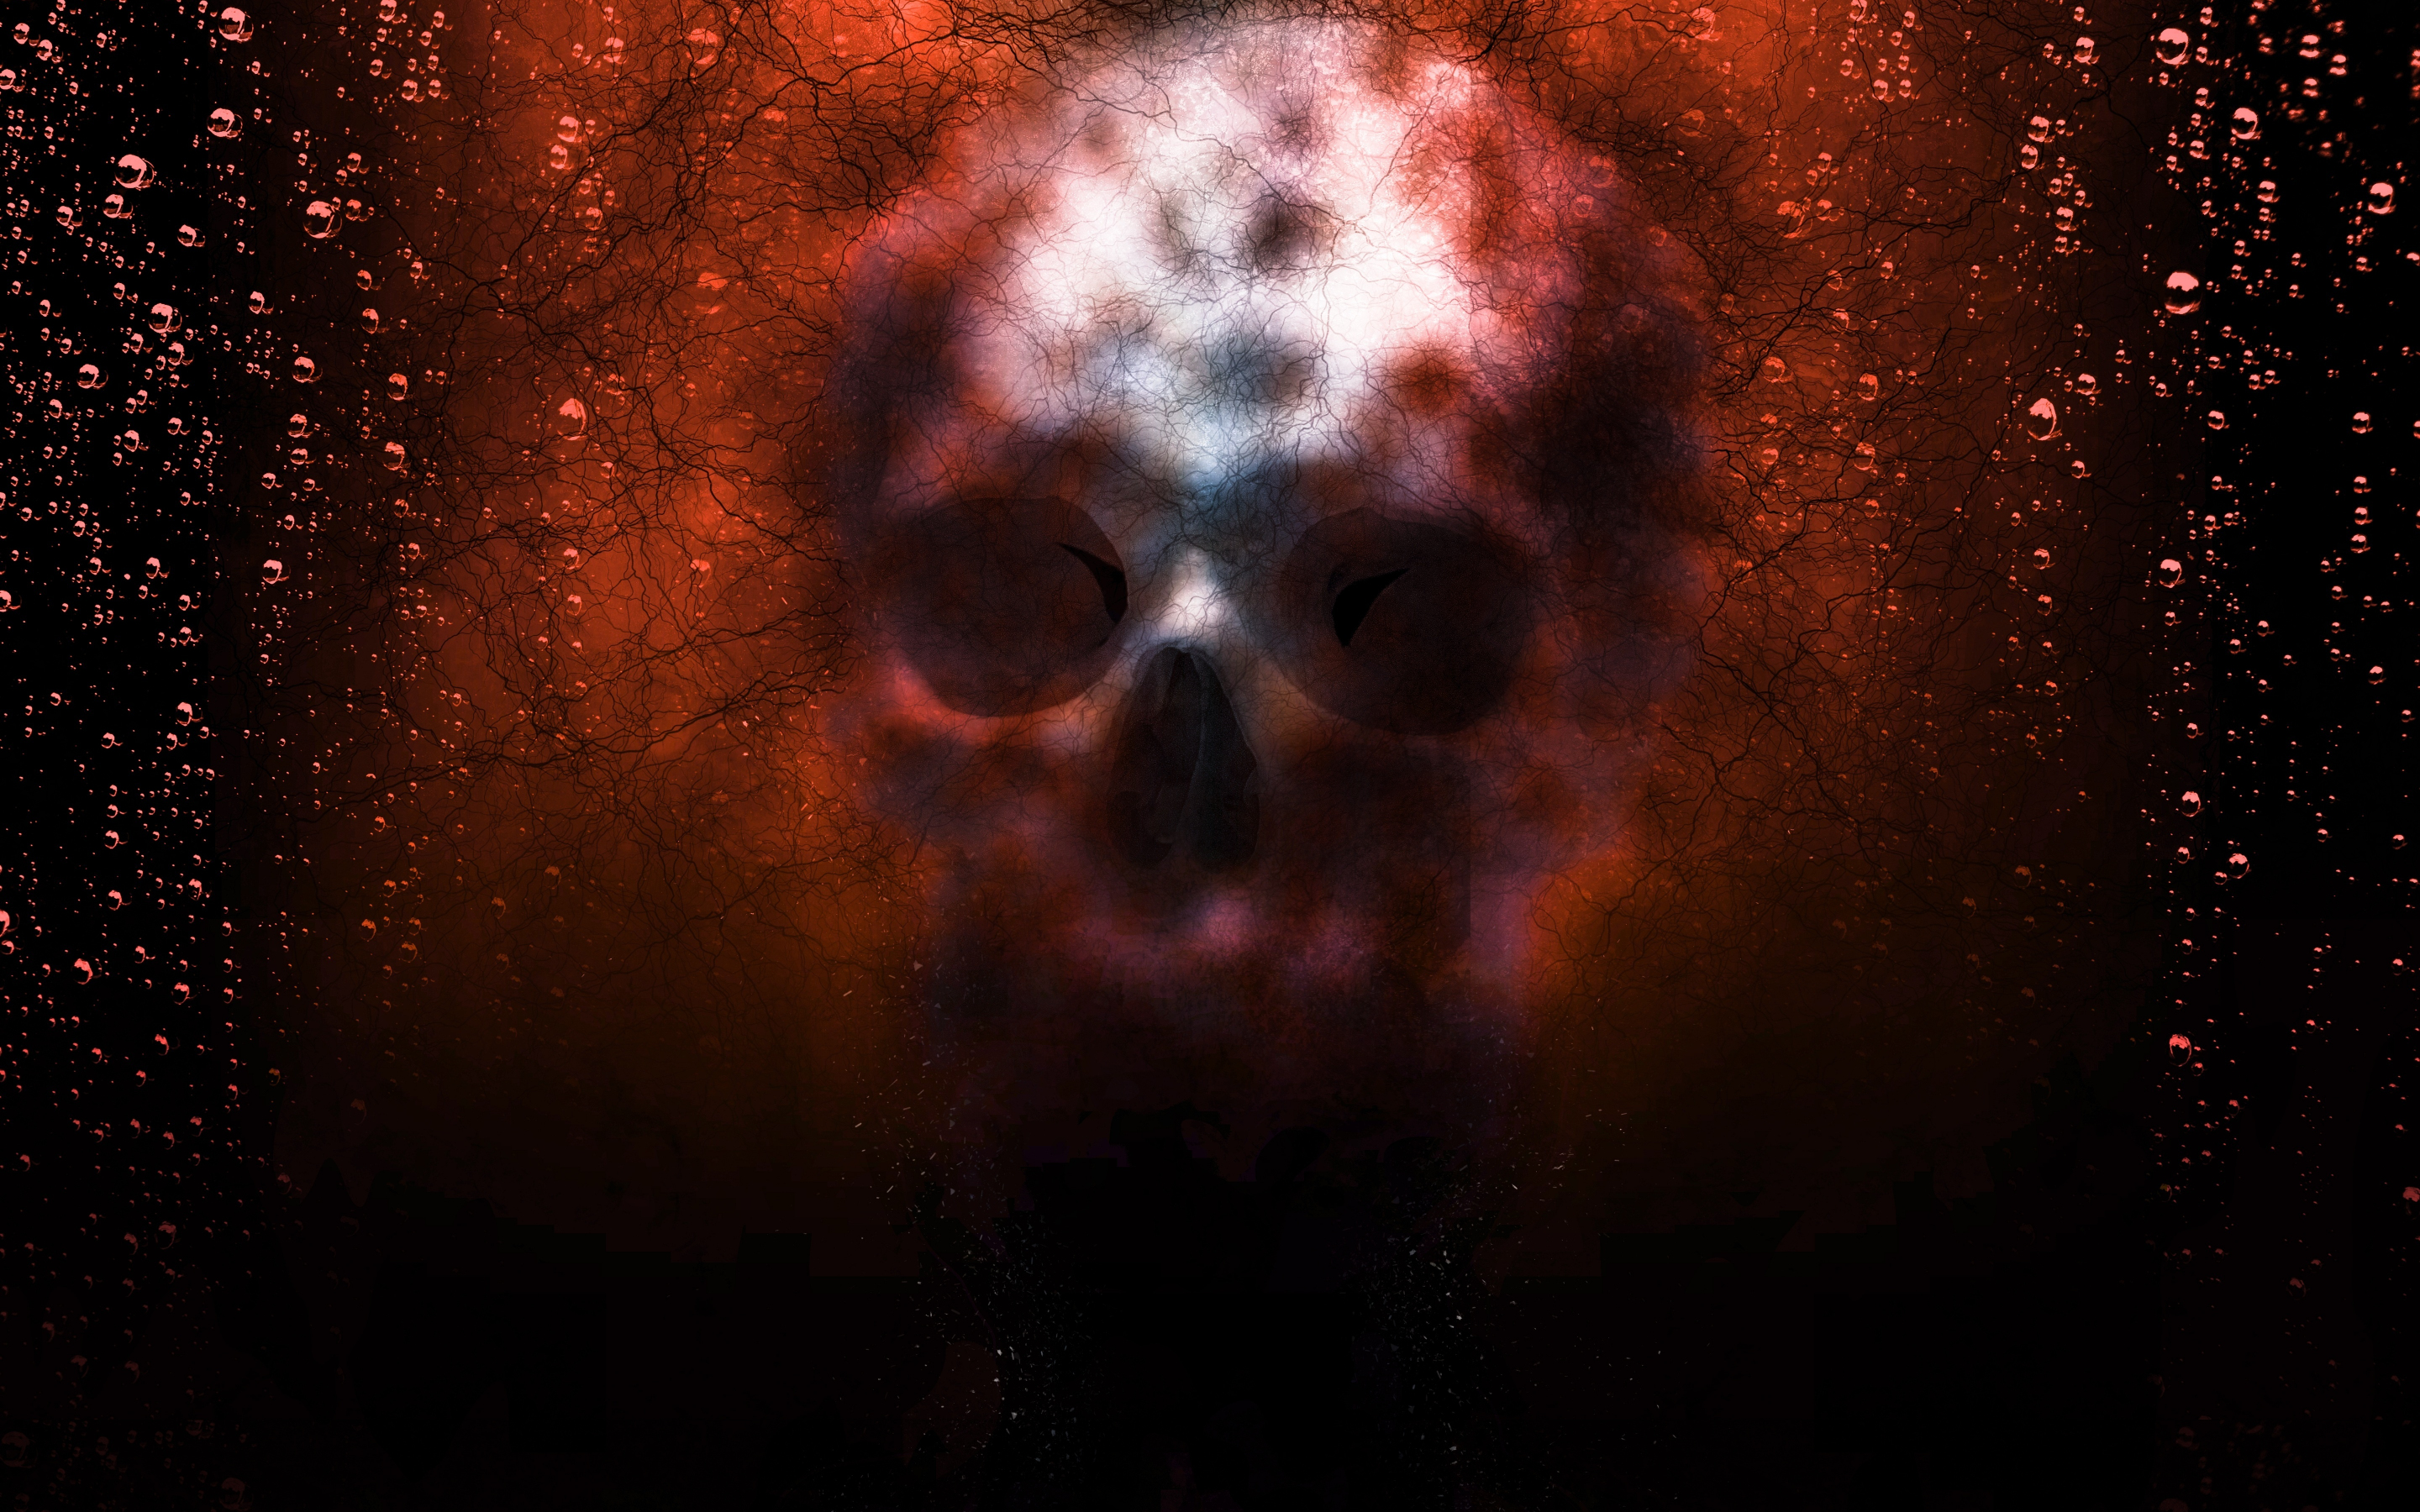 Skull, blur, creepy, fantasy, digital art, 2880x1800 wallpaper